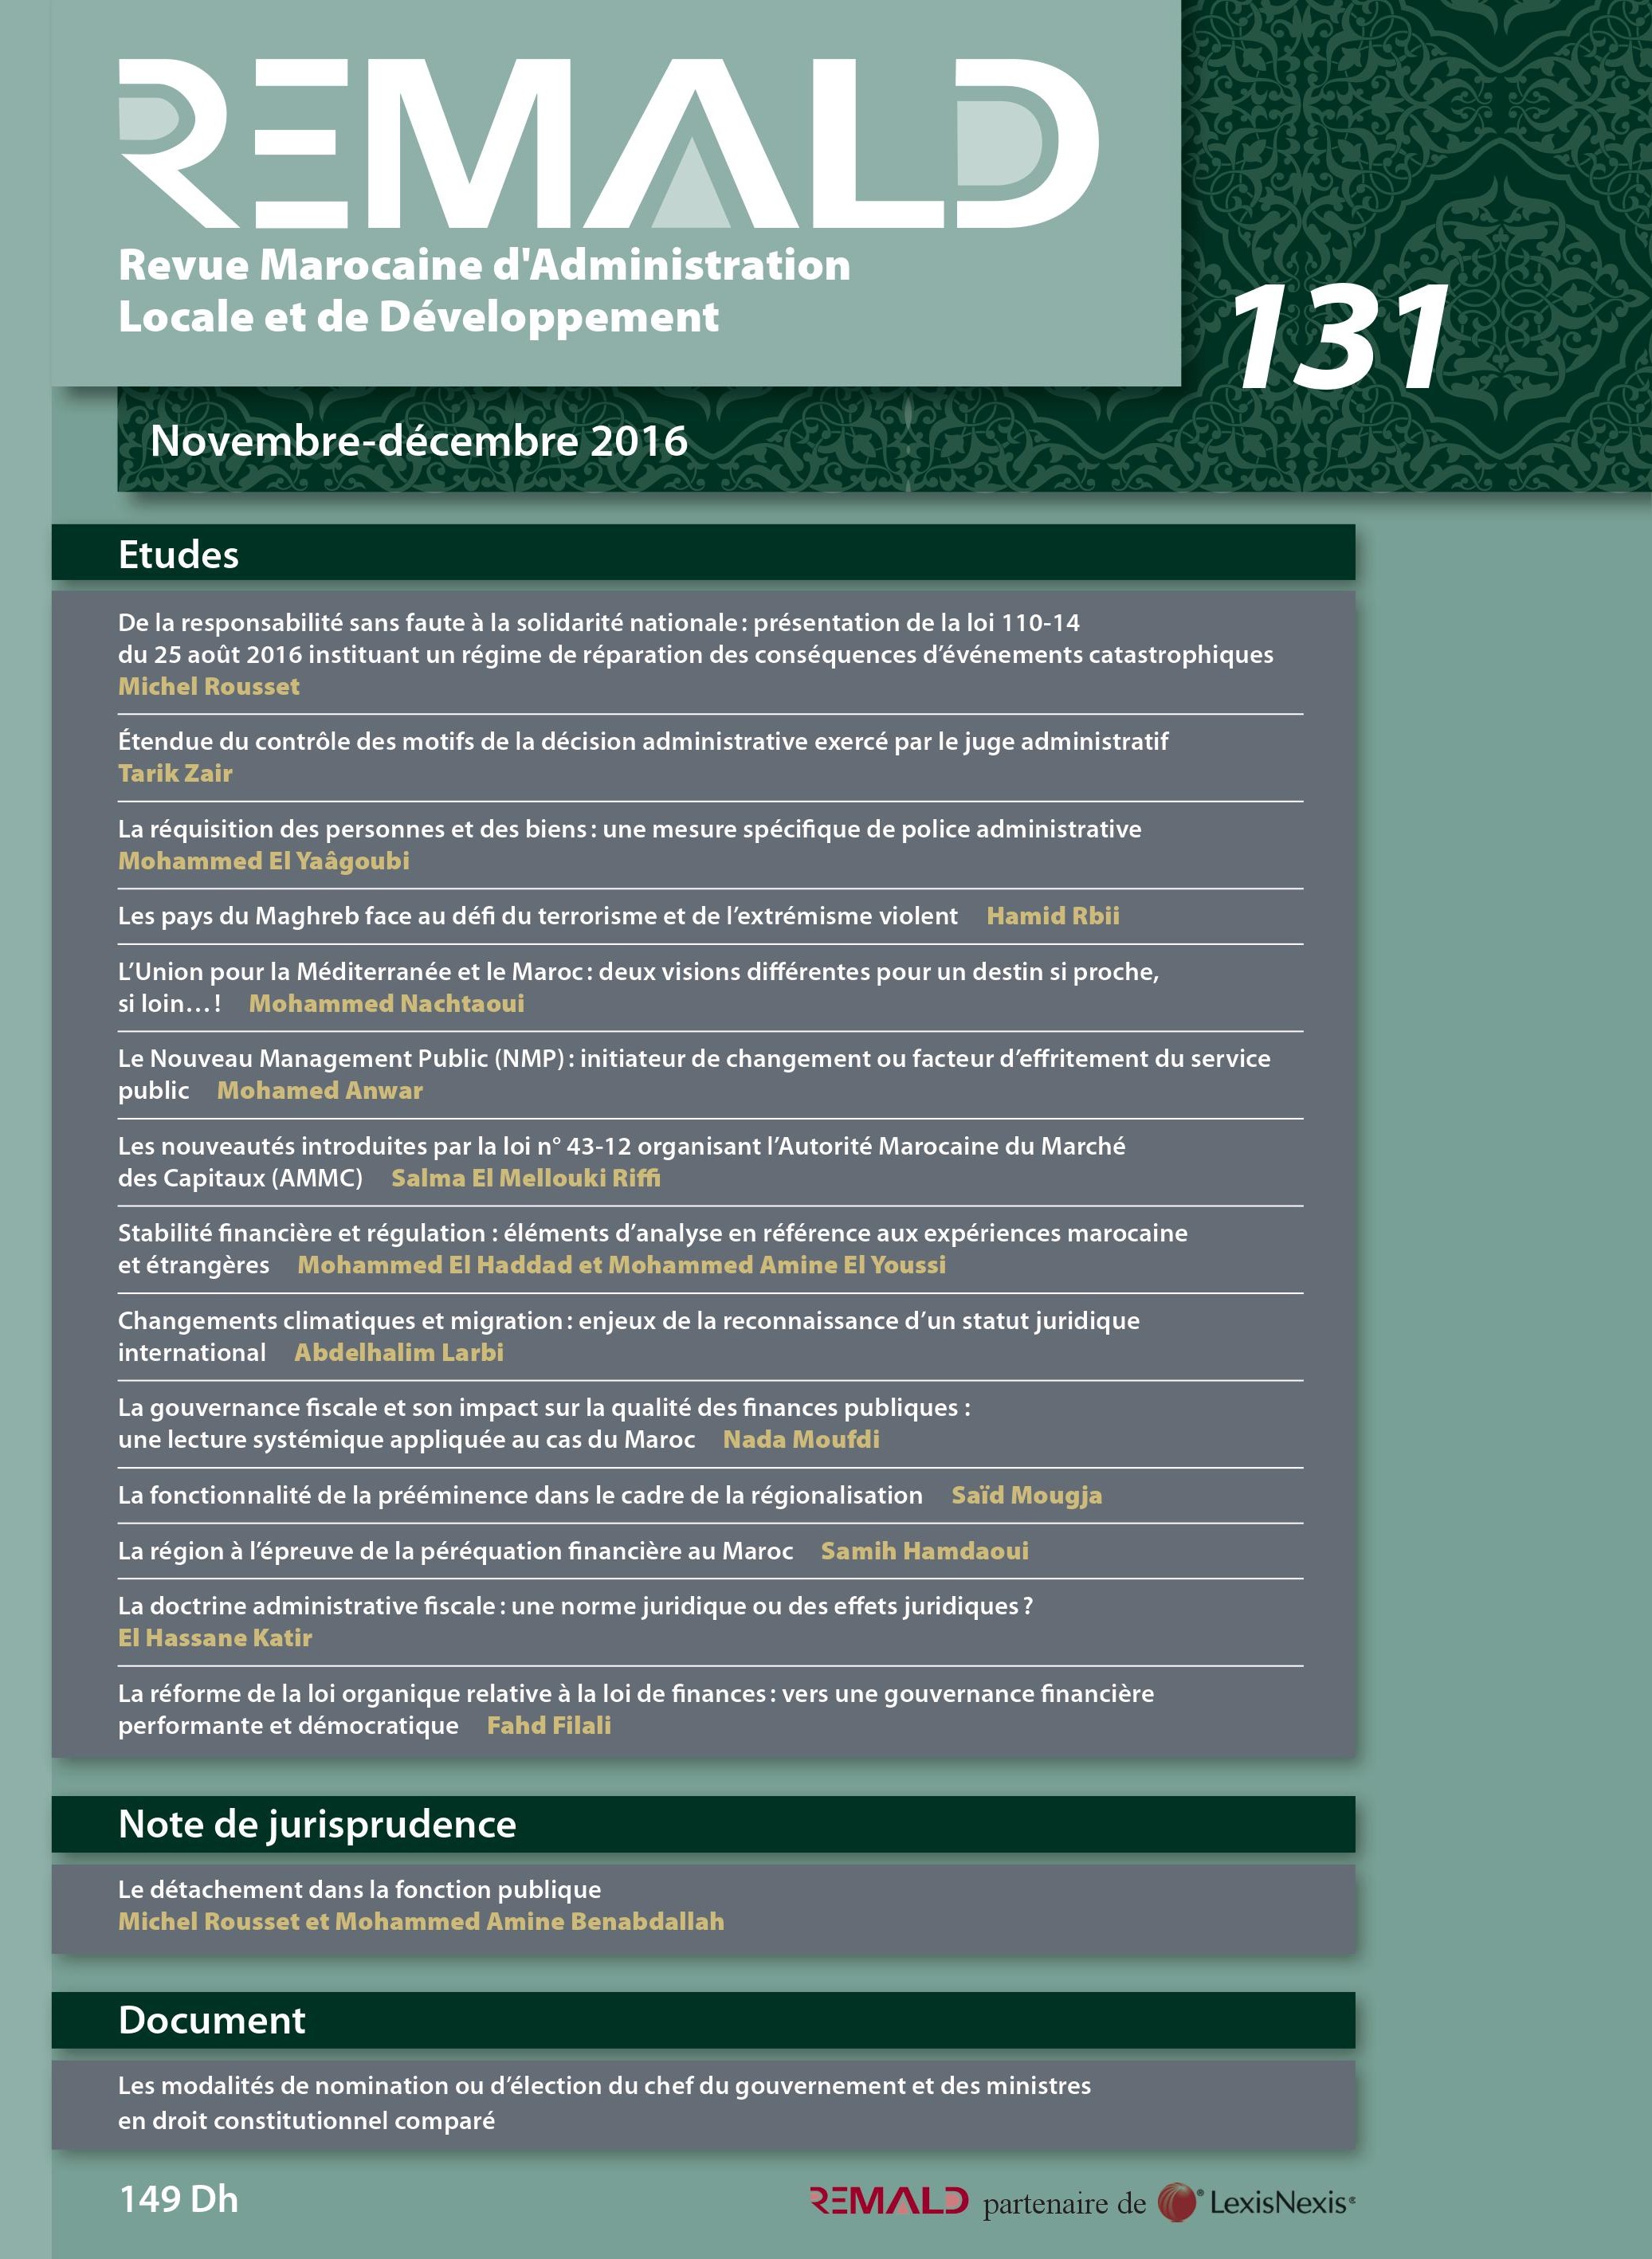 صدور العدد 131 من المجلة المغربية للإدارة المحلية والتنمية